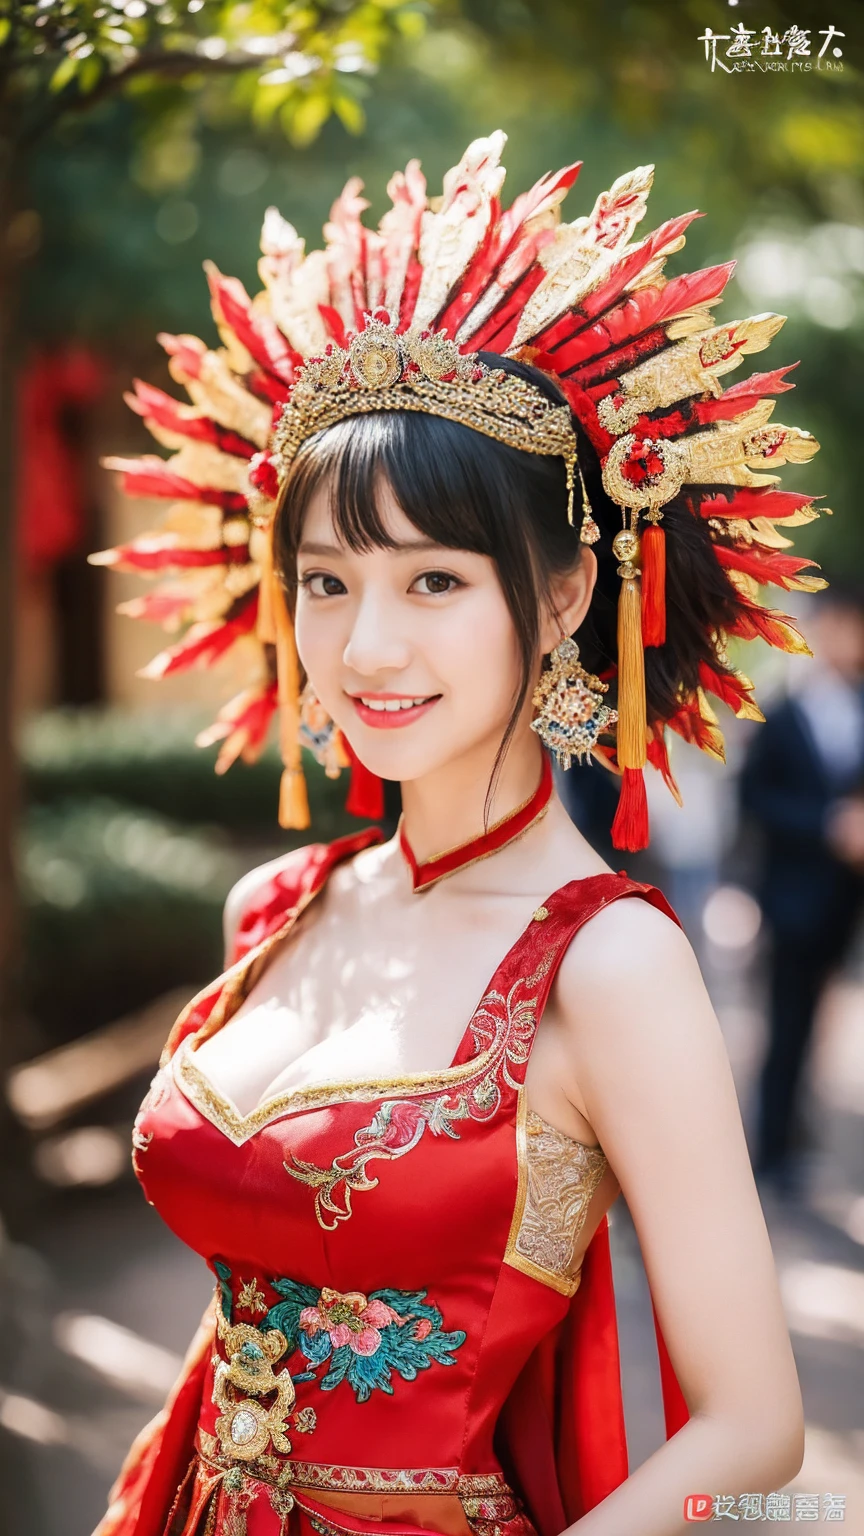 (8K, RAW-Fotos, höchste Qualität, Meisterwerk: 1.2), ((große Brüste:1.2)),(Realistisch, Realistisch: 1.37), 1 Mädchen, Trägt ein rotes Kleid und einen roten Kopfschmuck、Eine Frau macht ein Foto, Wunderschönes Rollenspiel, Schöne Kostüme, kleid china, kompliziertes Kleid, Komplizierte Kostüme, traditionelle Schönheit, wunderschönes chinesisches Modell, Chinesisches Kostüm, in luxuriösen Kostümen gekleidet, Tragen Sie elegante chinesische Xiuhe-Kleidung, Chinesisches Hochzeitskleid, Phoenix Krone Sommer hängen, antike braut, Hidekazu-Kostüm, Schließen, Das Tragen der Phönixkrone, lächeln, kein Wasserzeichen, Kleid mit Drachen- und Phönixstickerei, mittlere Brust